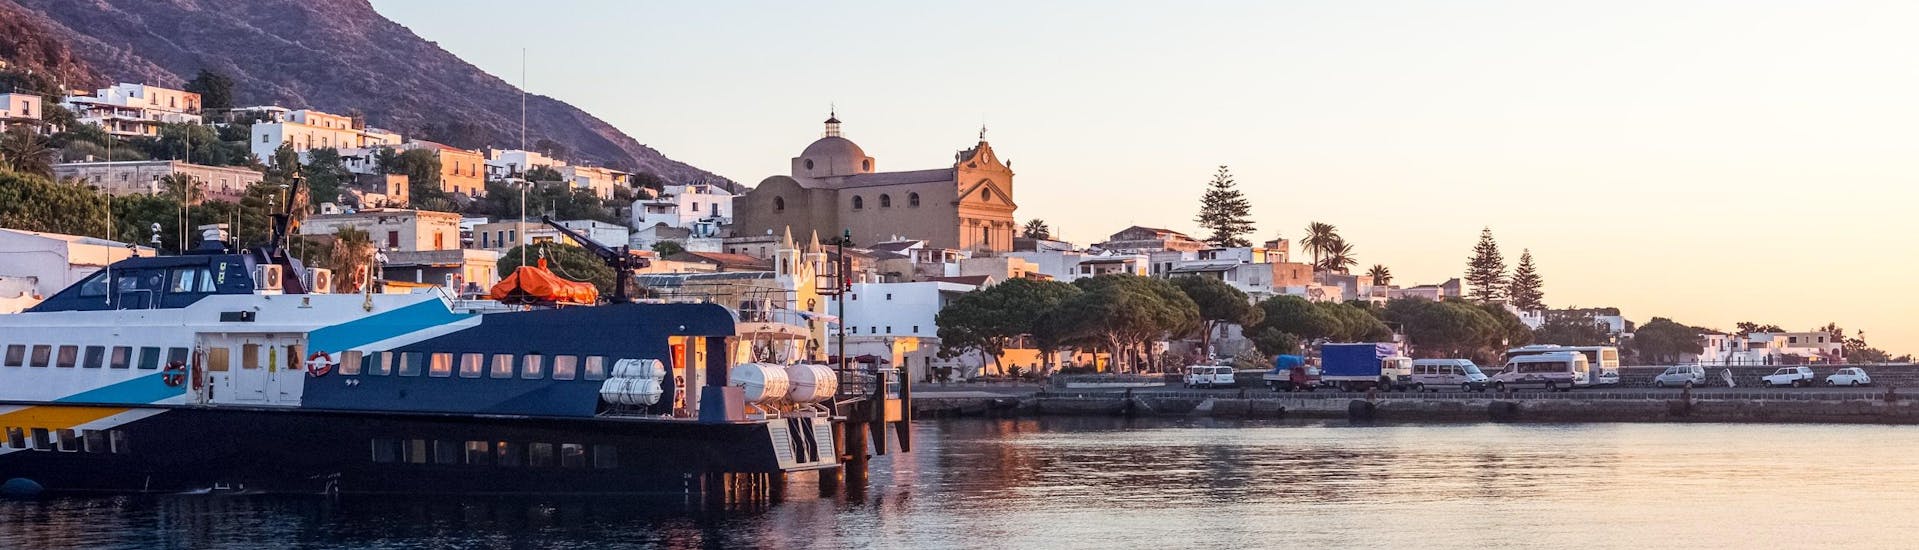 Vista sobre el puerto de Santa Marina Salina, accesible con un paseo en barco.